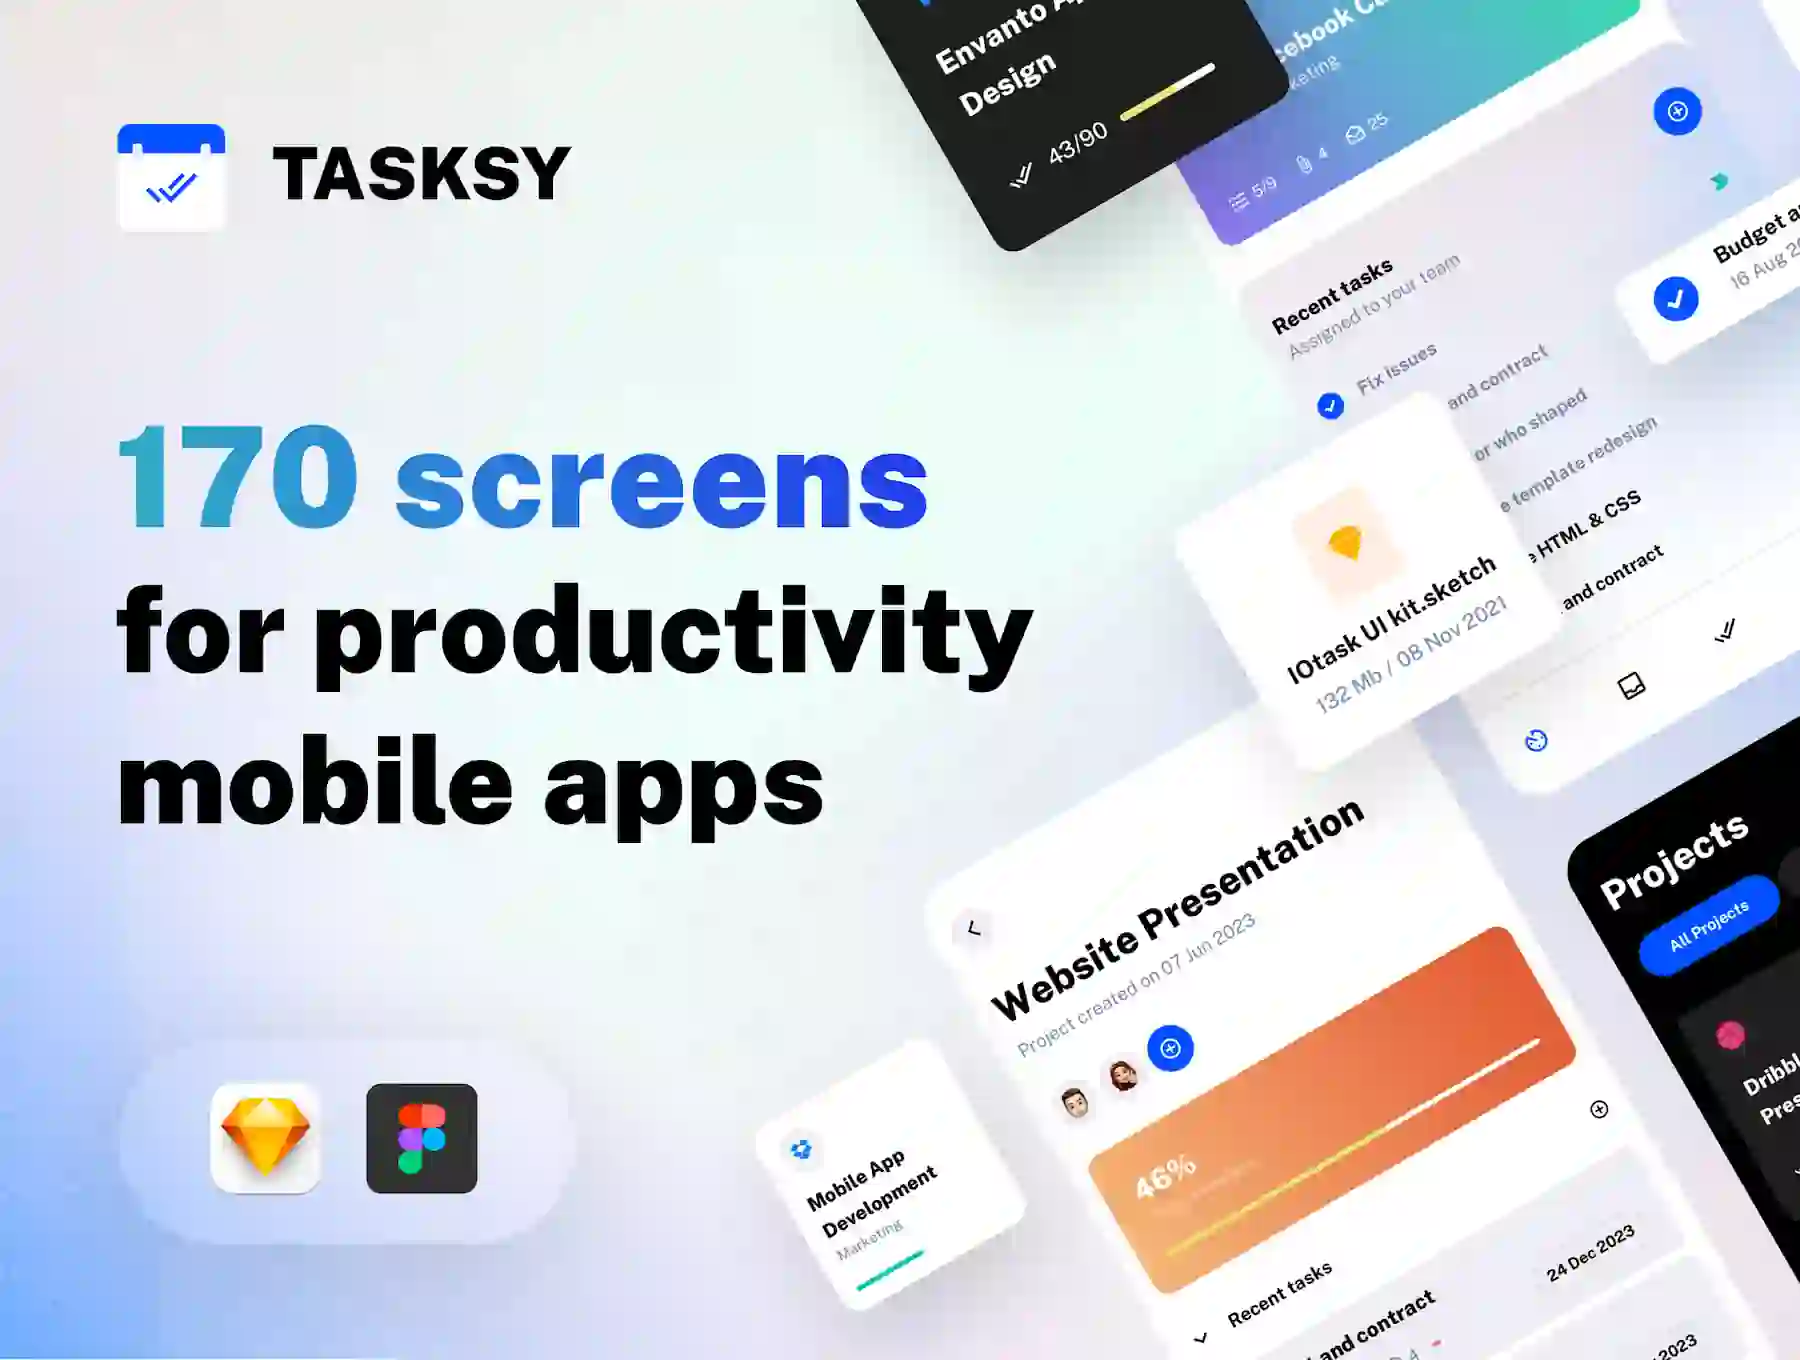 Tasksy - UI kit for Productivity Mobile Apps